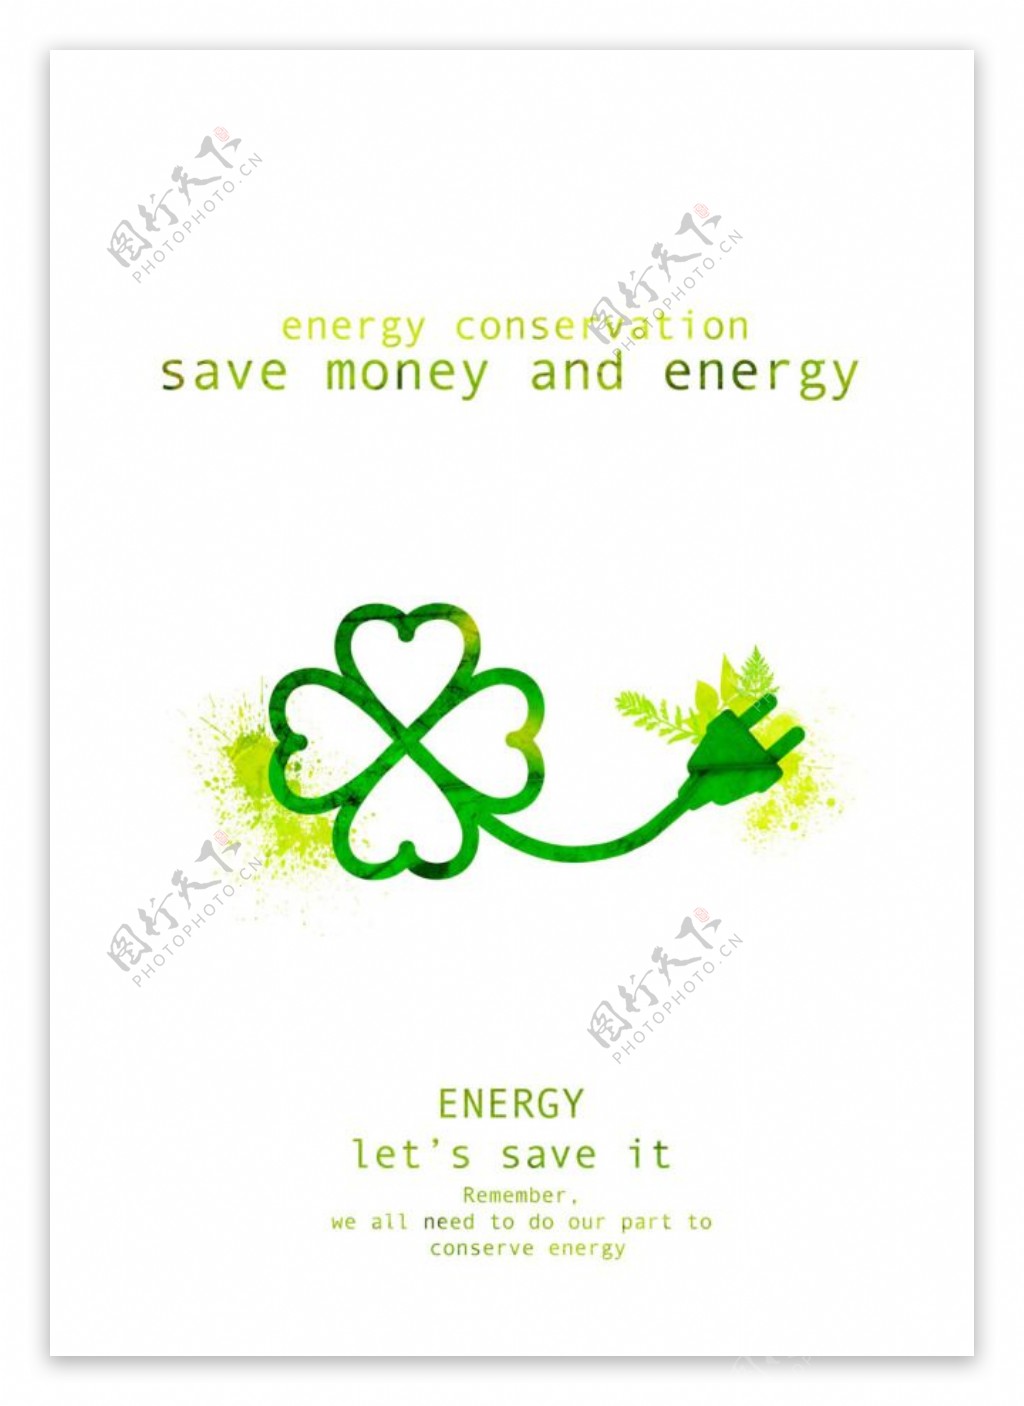 绿色环保素材简洁海报